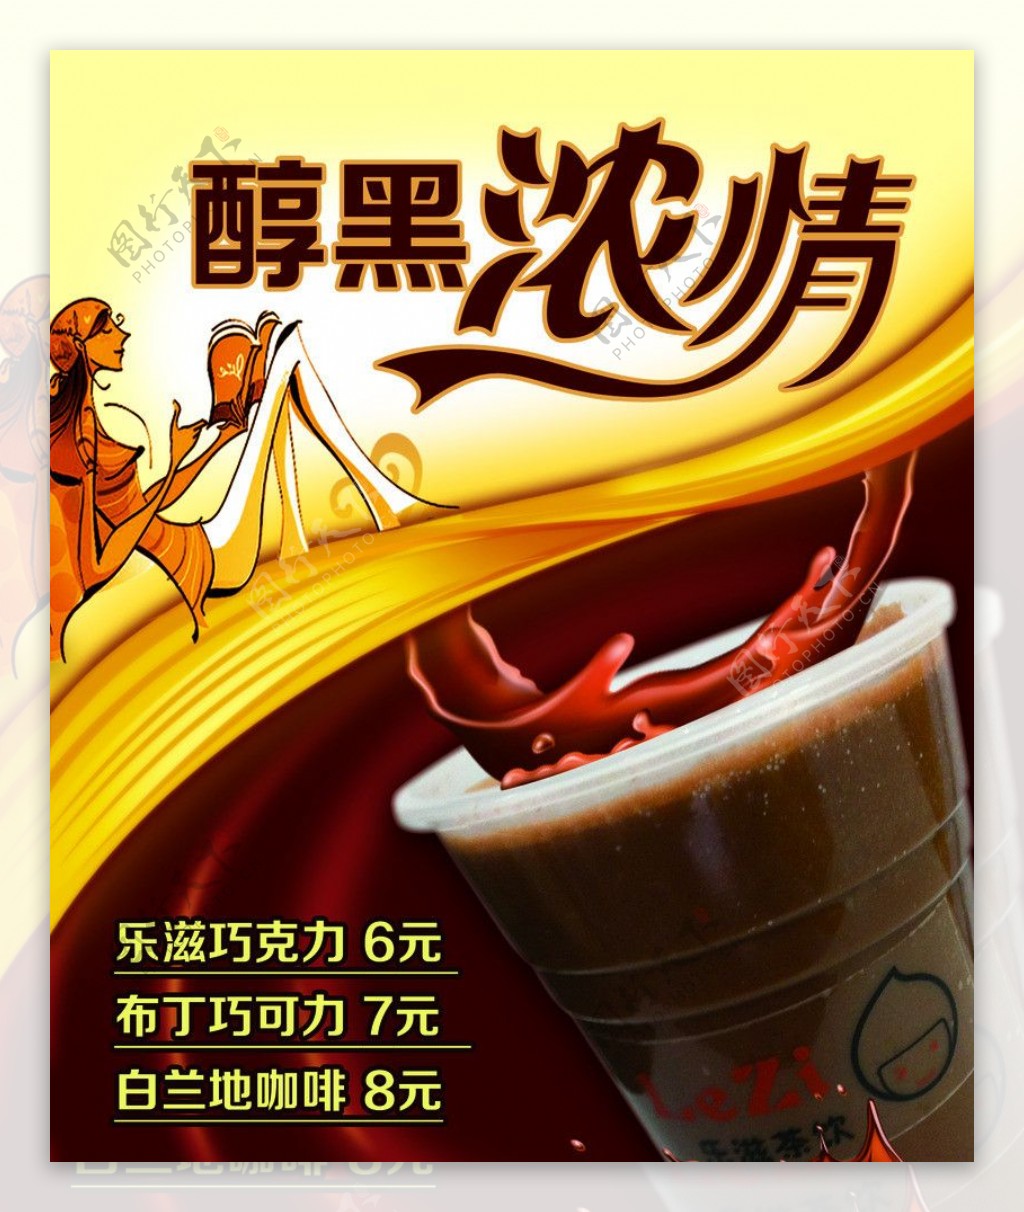 奶茶海报巧克力奶茶图片